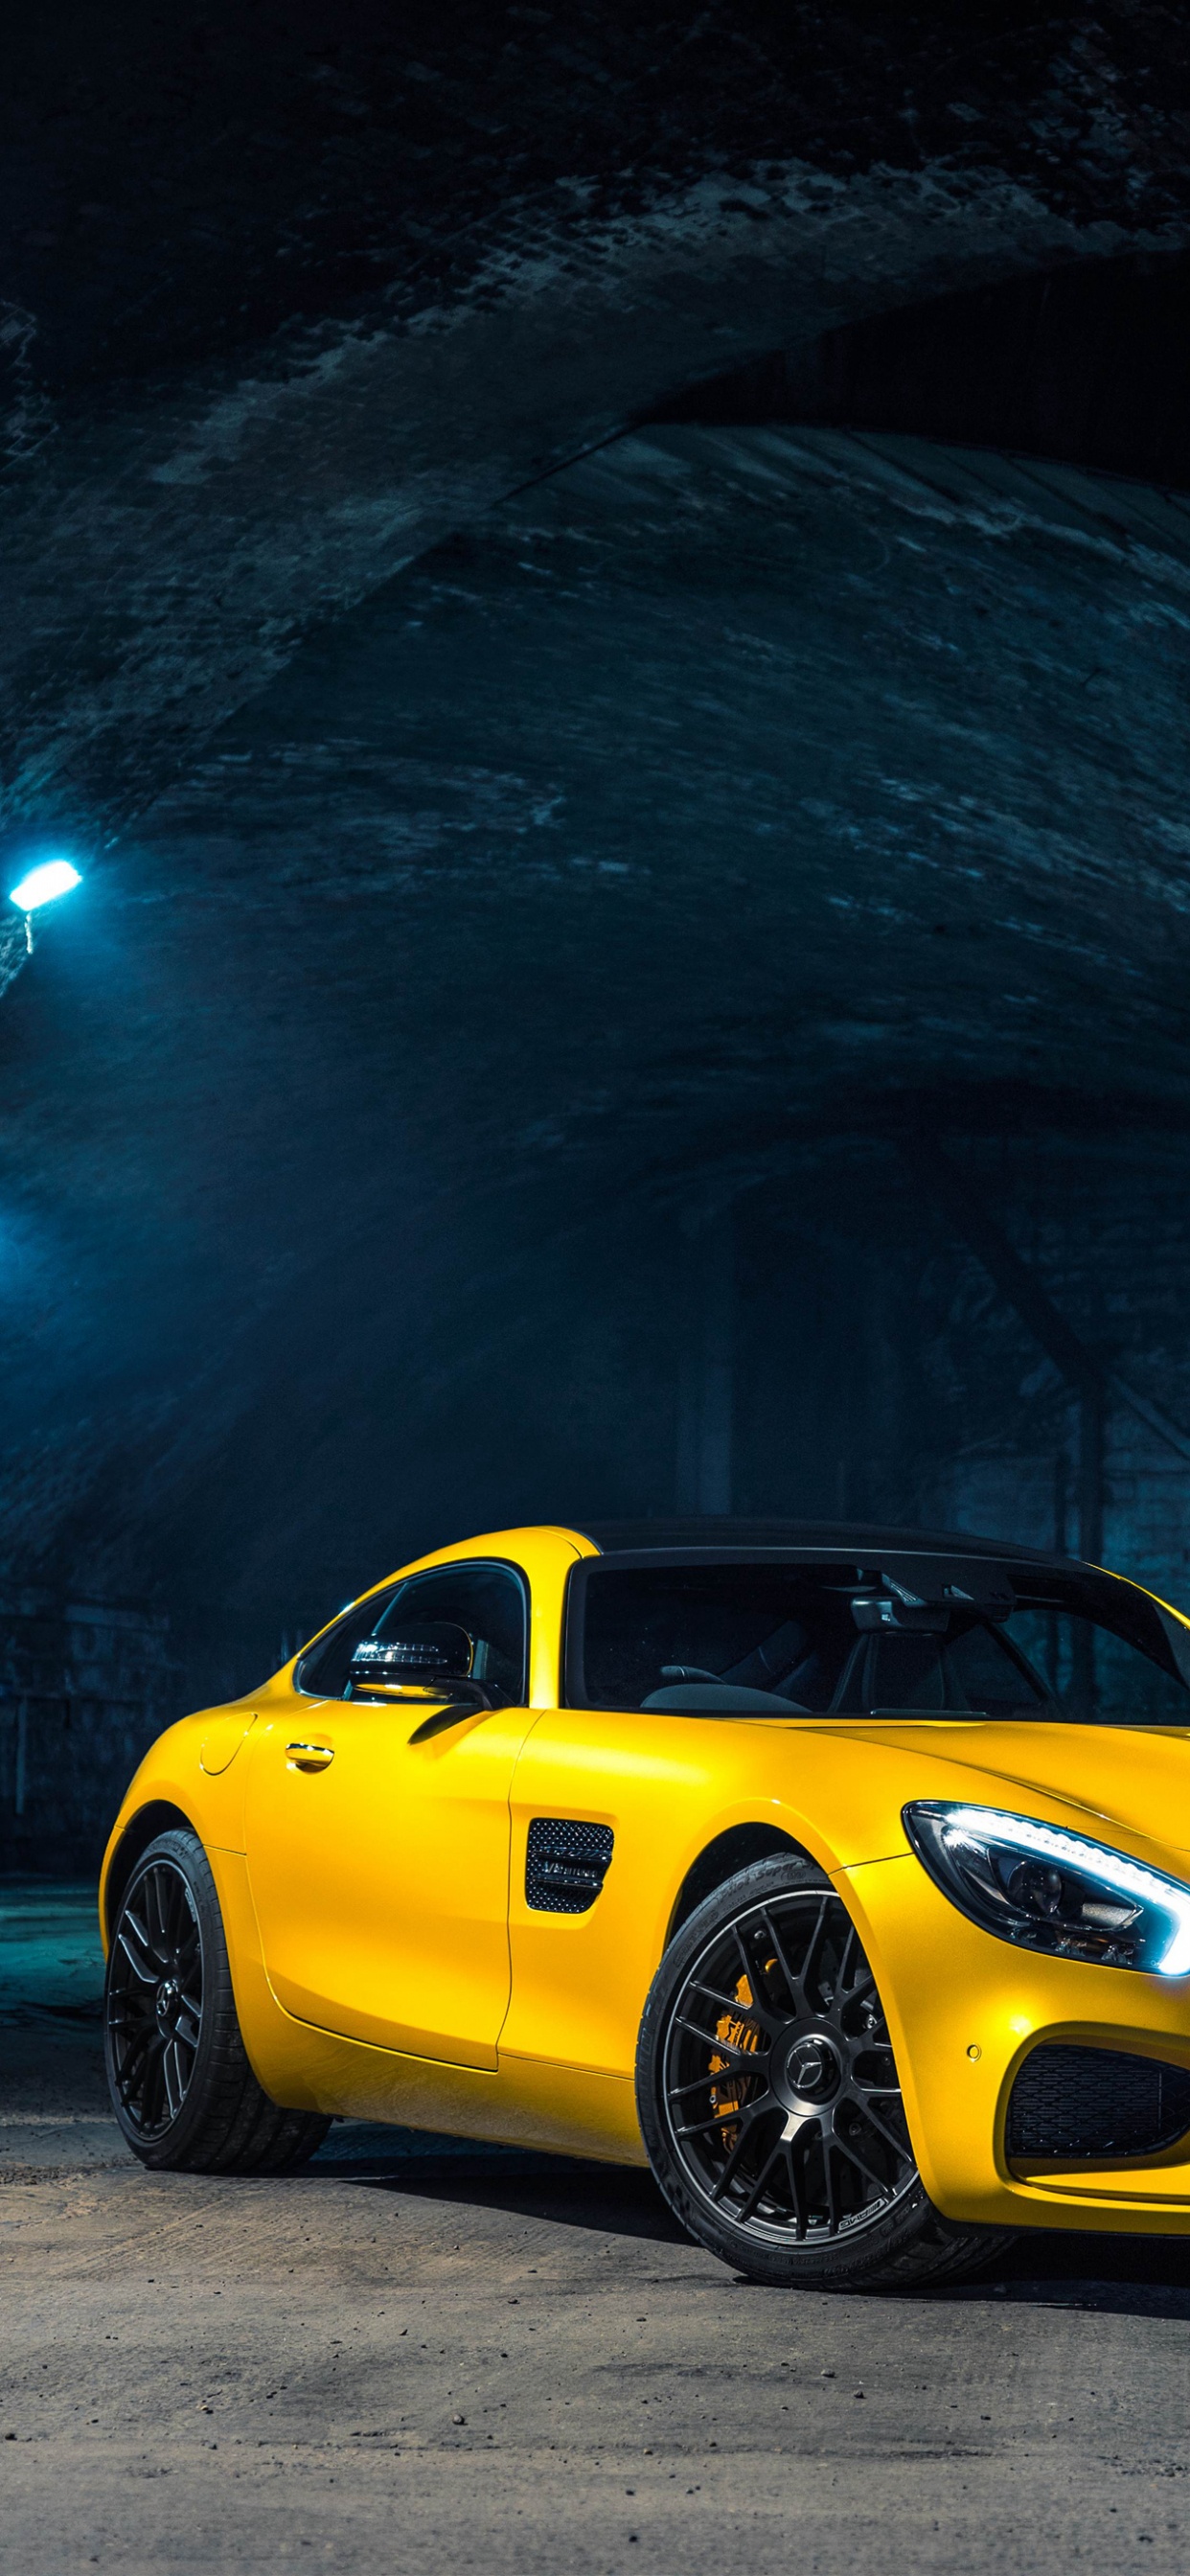 Gelber Porsche 911 im Tunnel Geparkt. Wallpaper in 1242x2688 Resolution